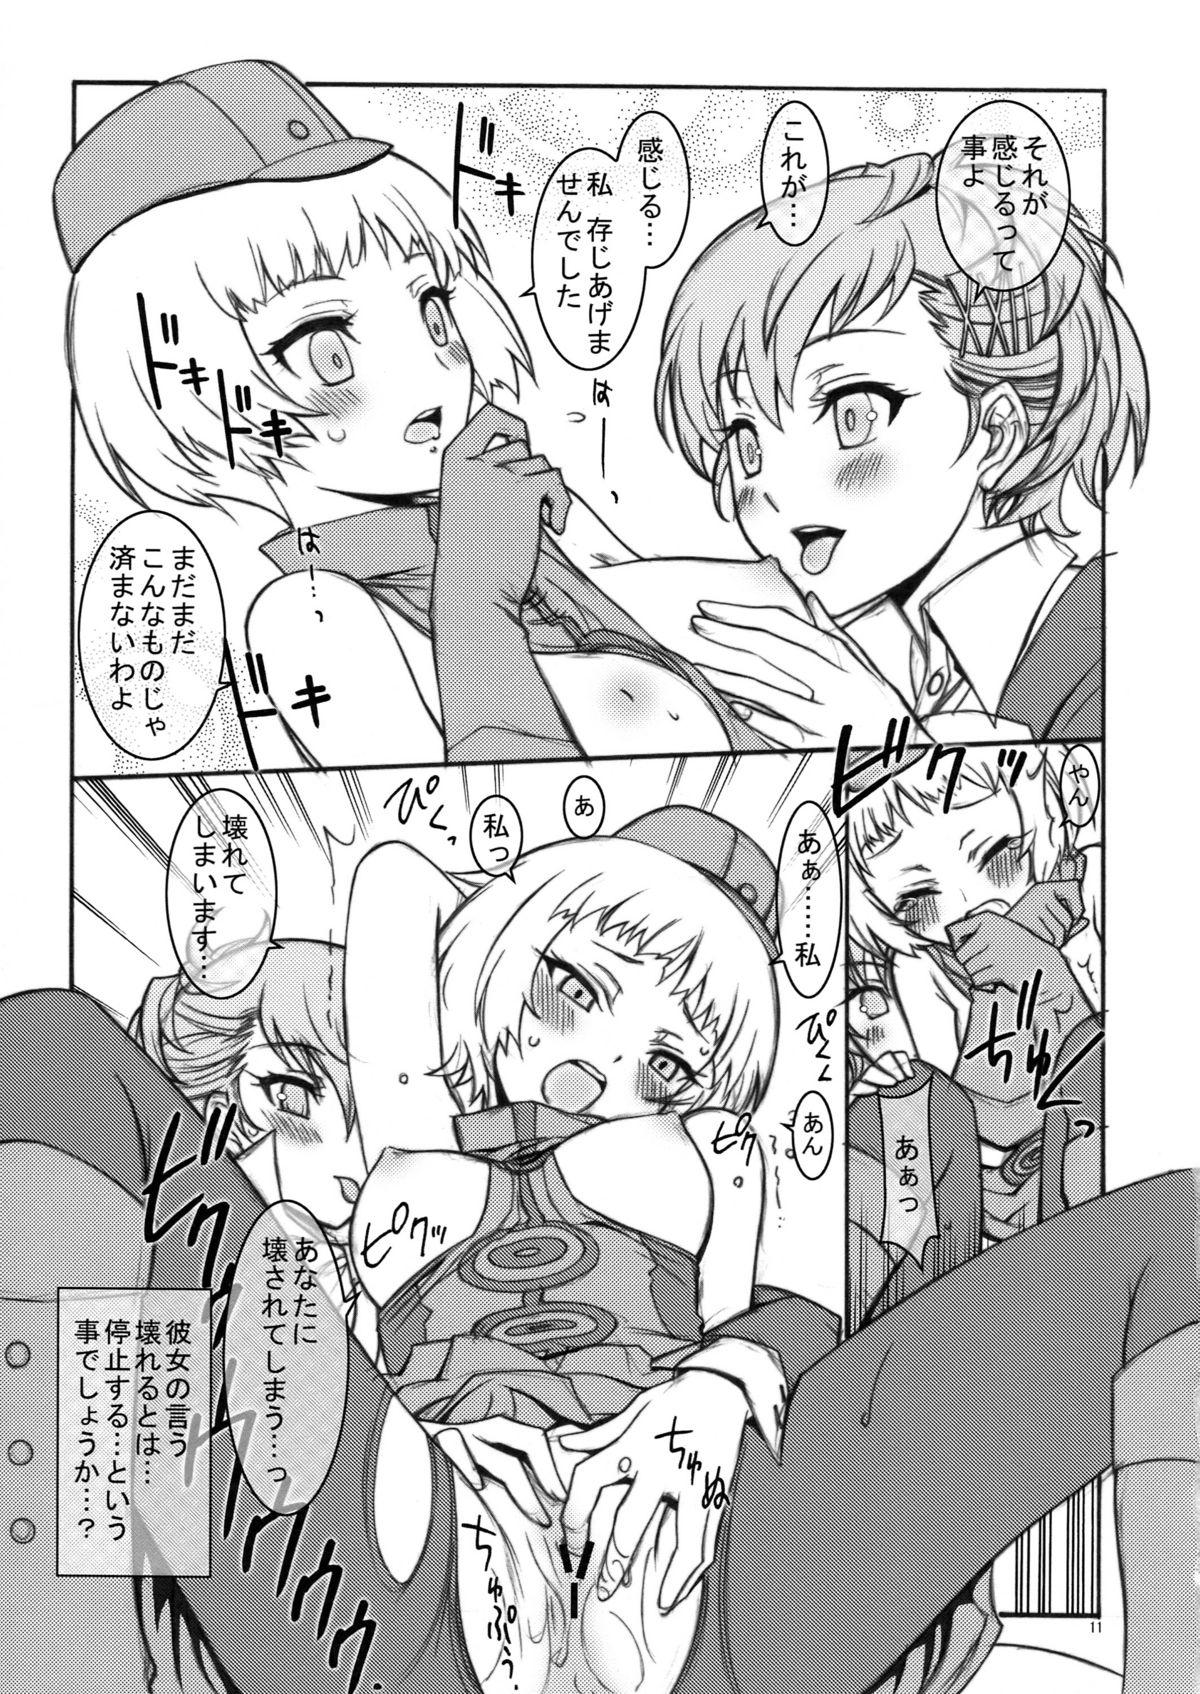 Dorm KAISHAKU P3P - Persona 3 Top - Page 11